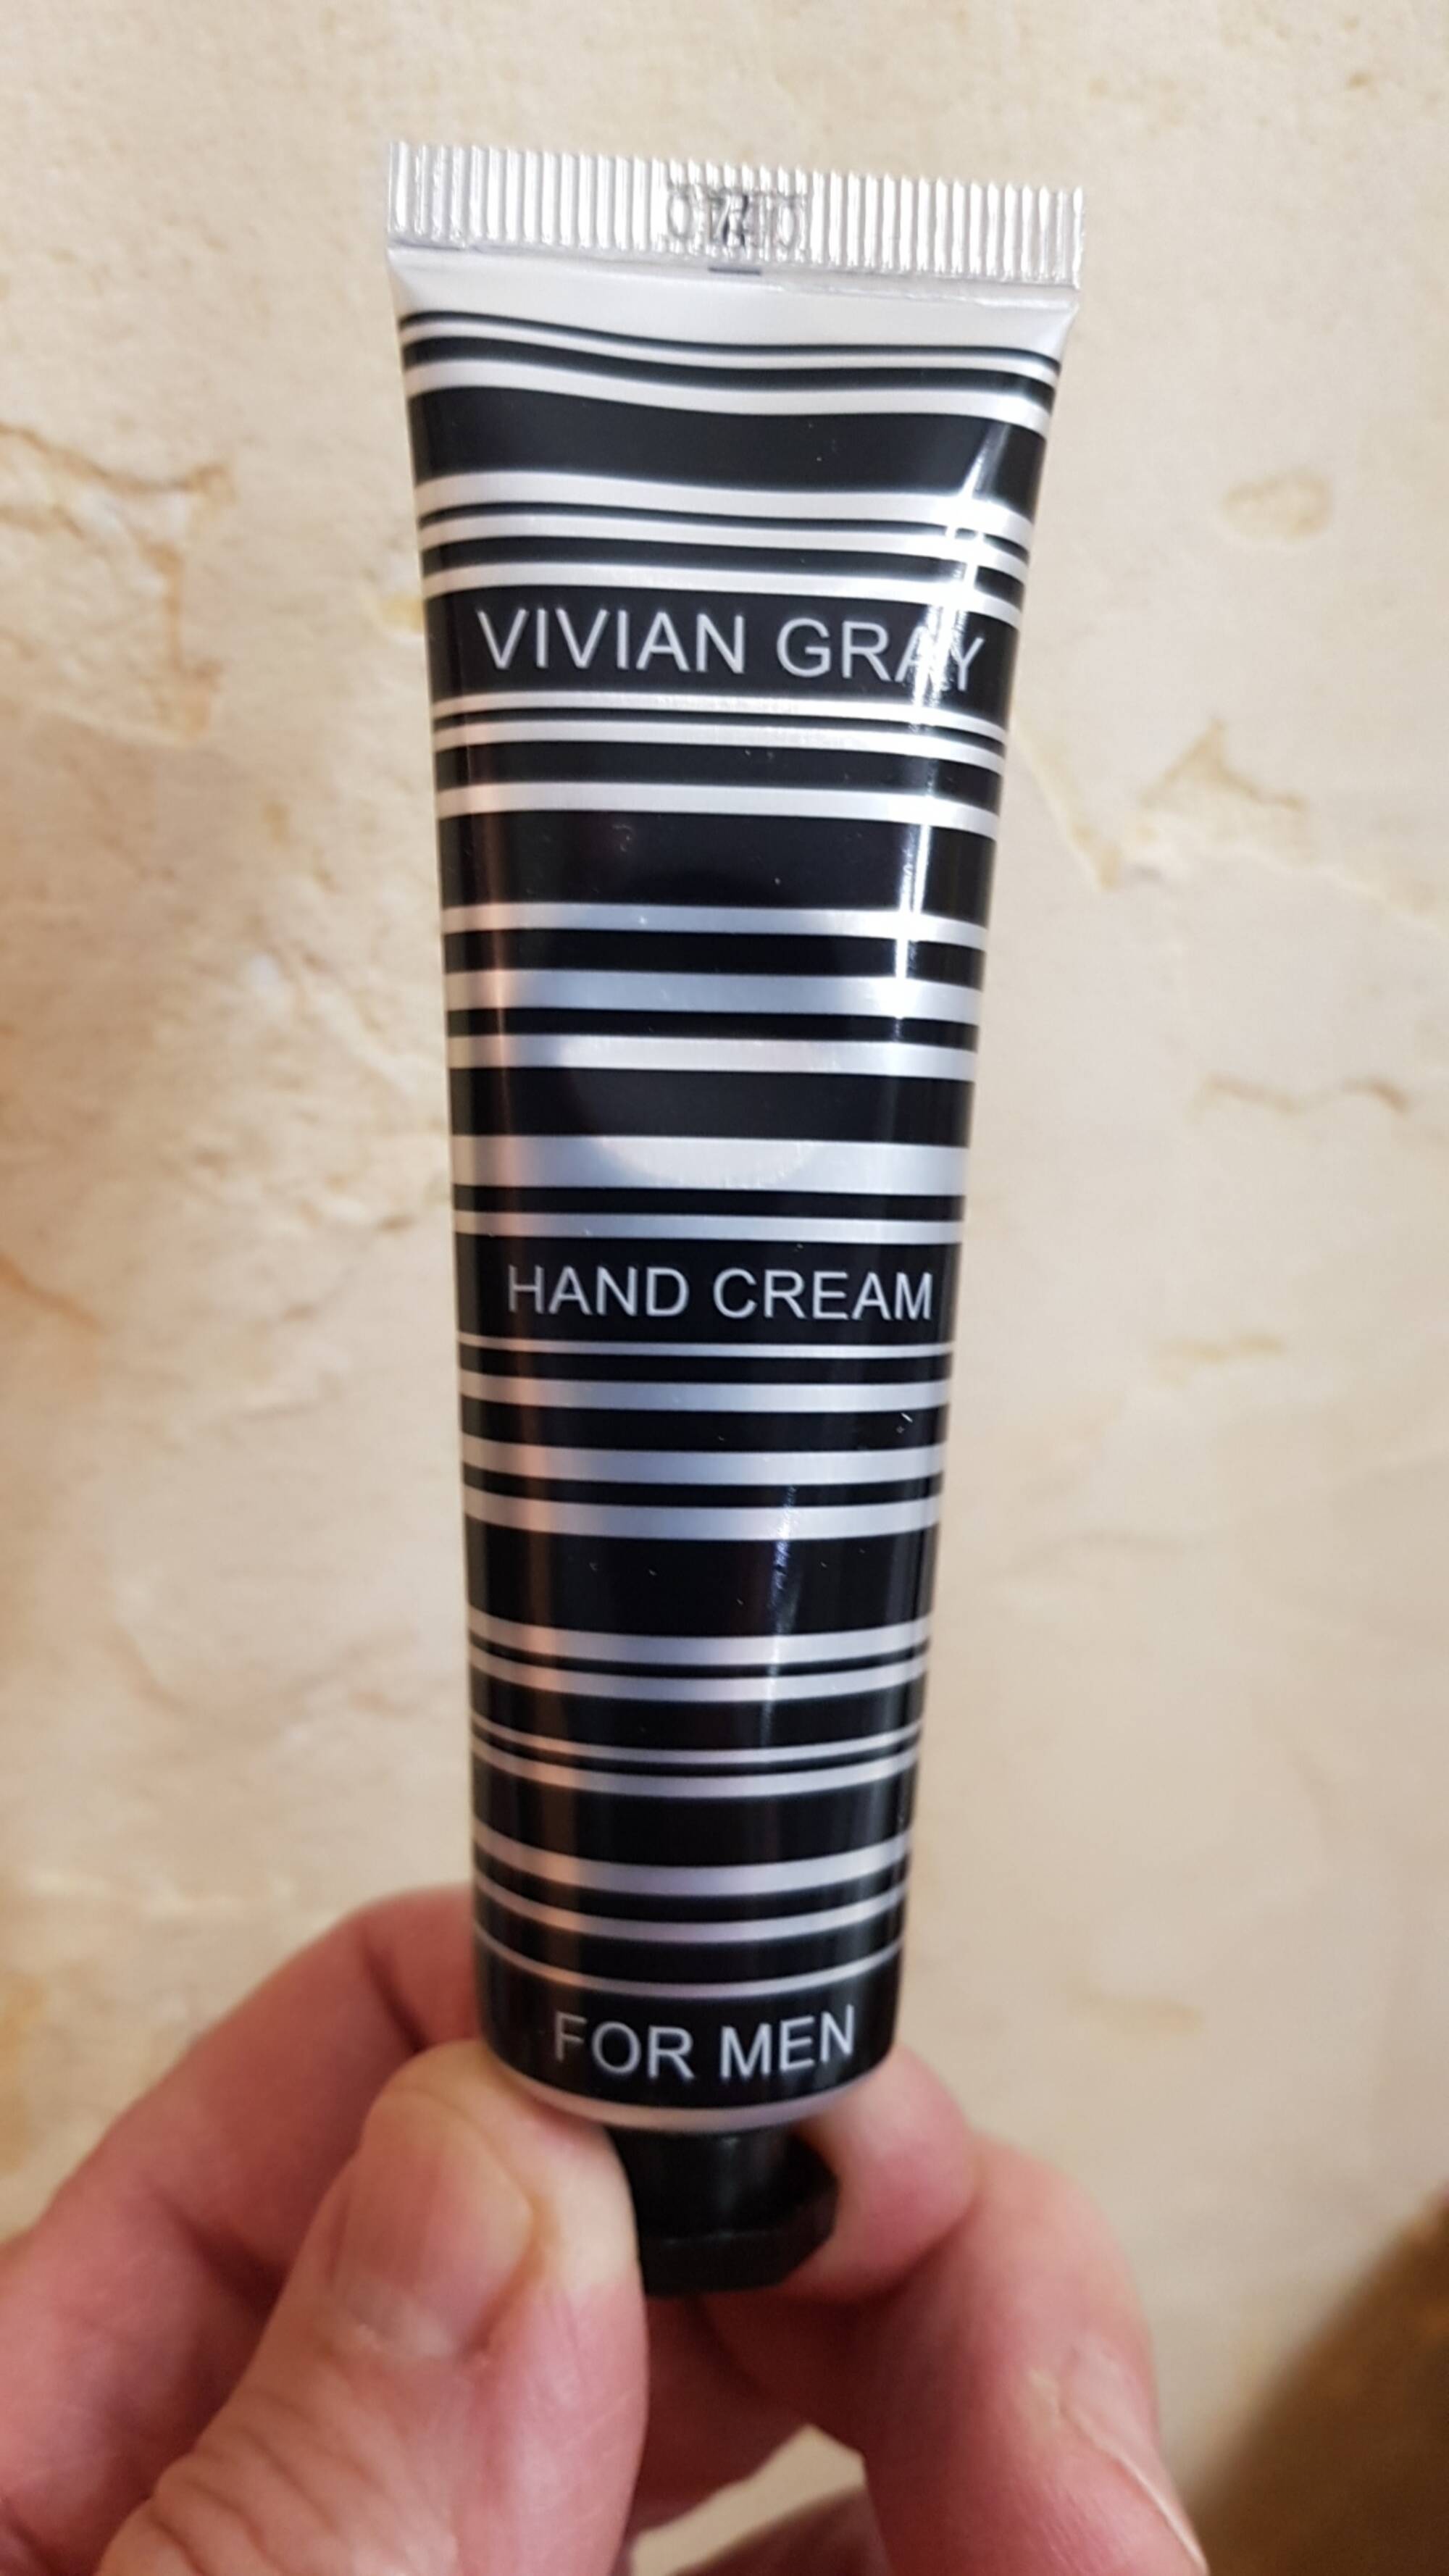 VIVIAN GRAY - Hand cream for men